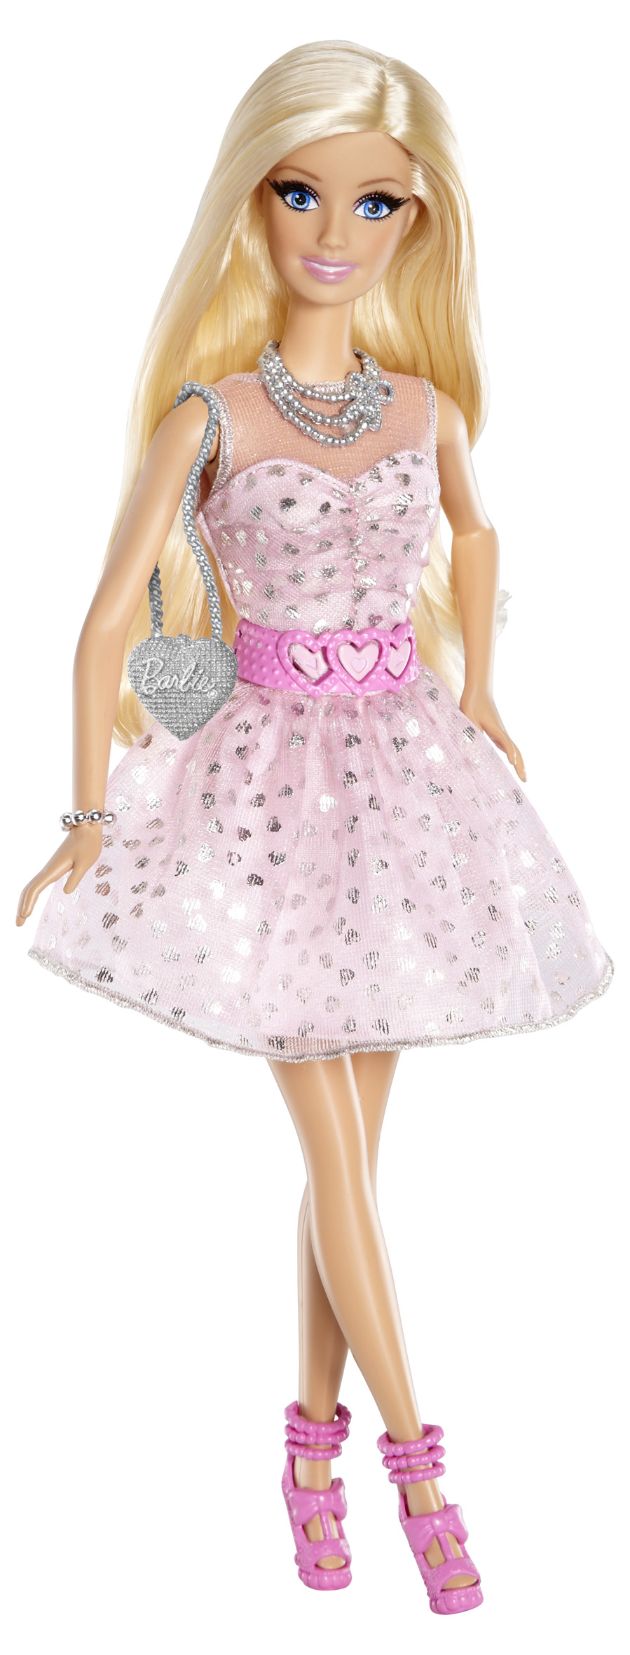 Barbie Life in the Dreamhouse: Start der vierten Staffel und neue Puppenkollektion (BILD)